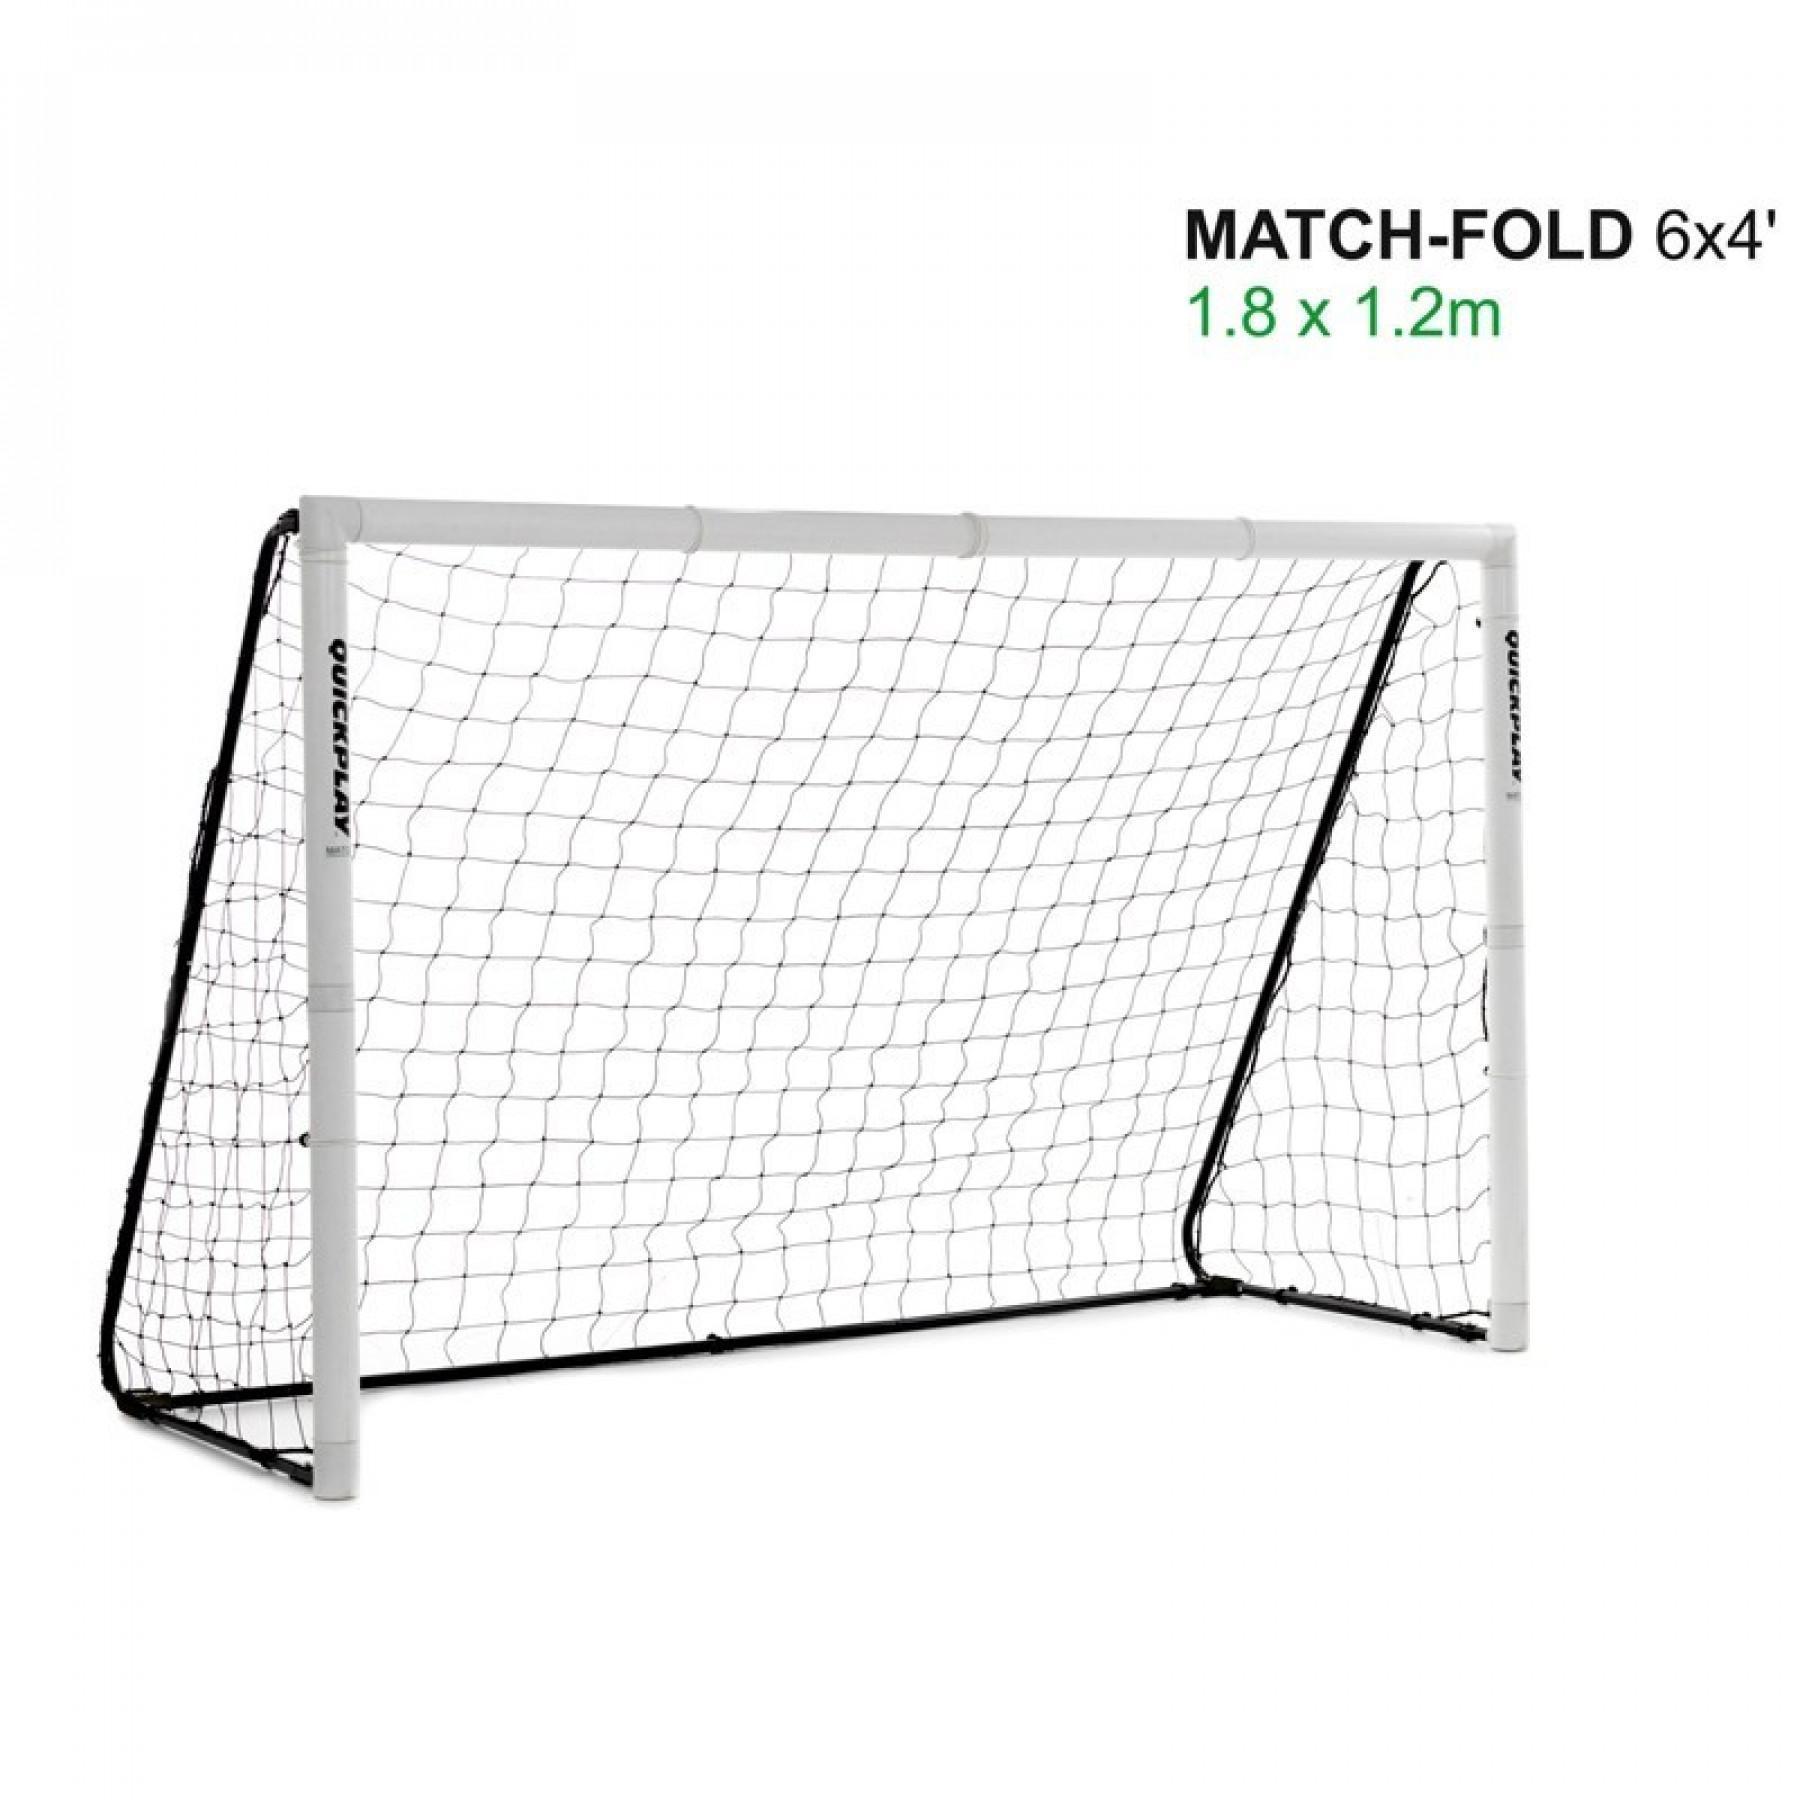 Golo de futebol dobrável Quickplay match fold 1,8m x 1,2m